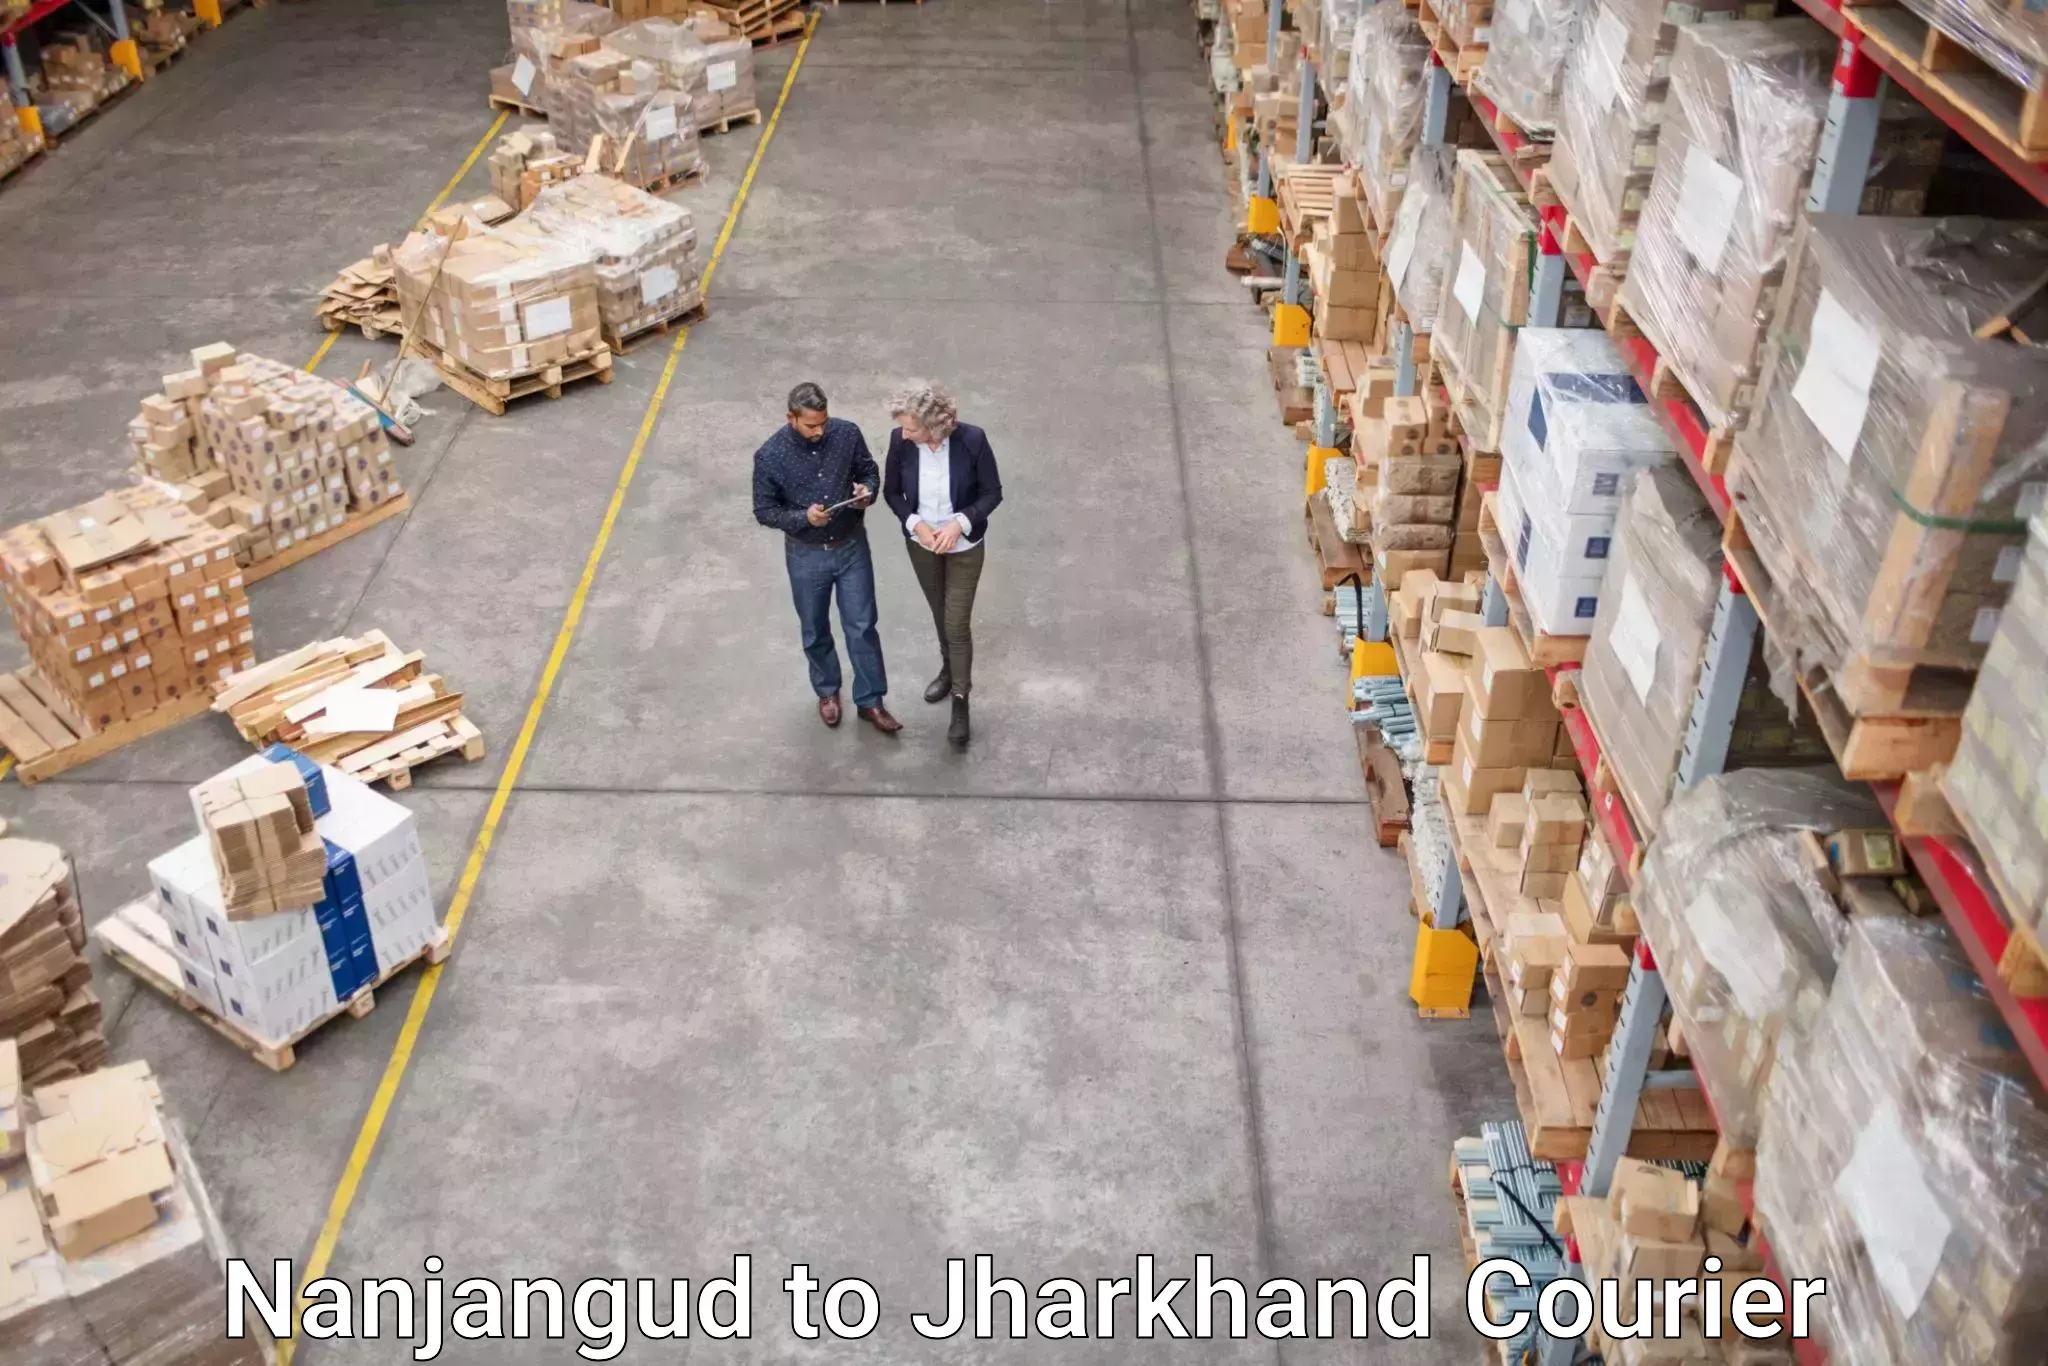 Doorstep delivery service Nanjangud to Ranchi